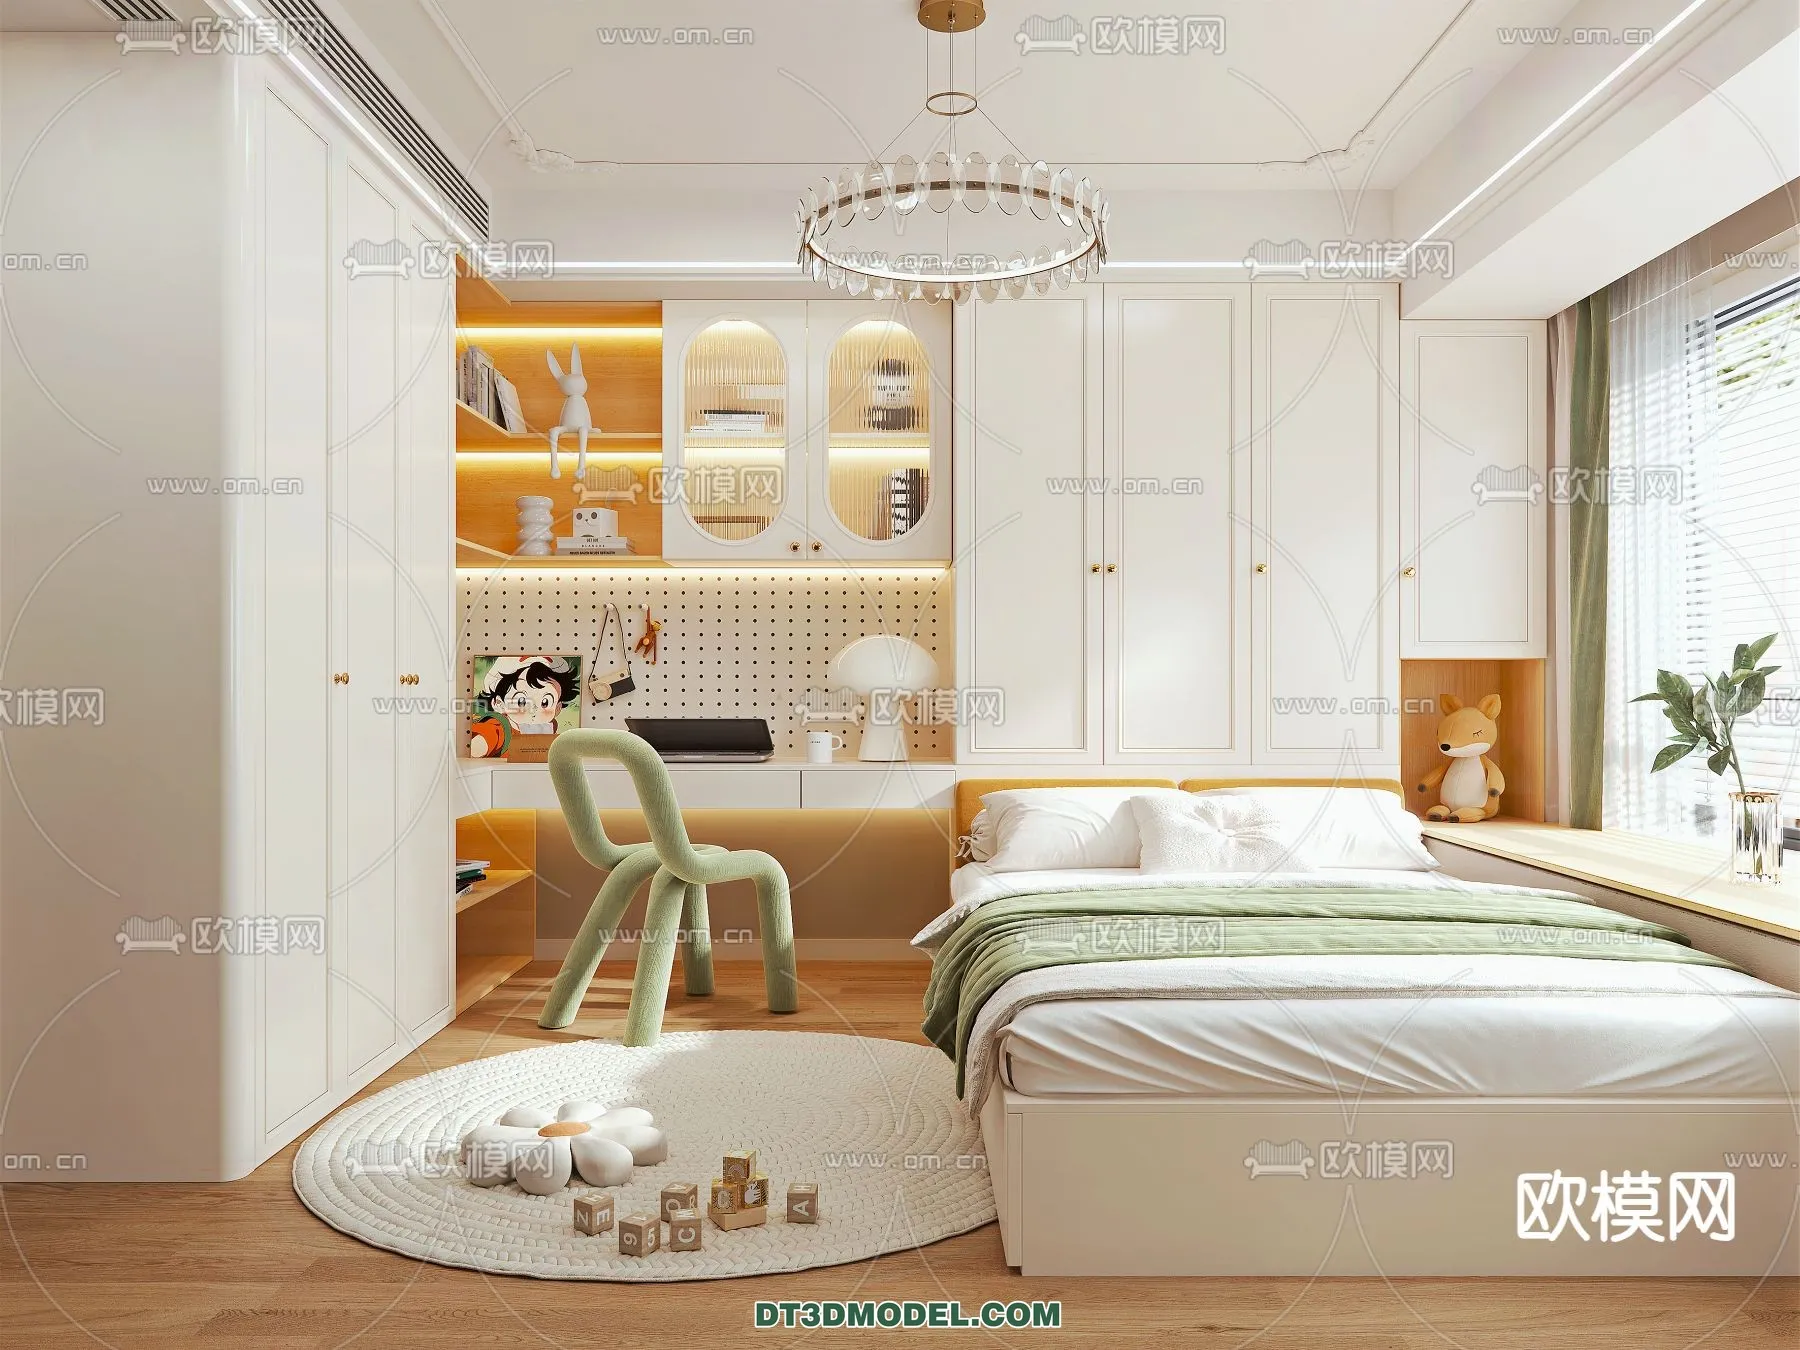 Tatami Bedroom – Japan Bedroom – 3D Scene – 076